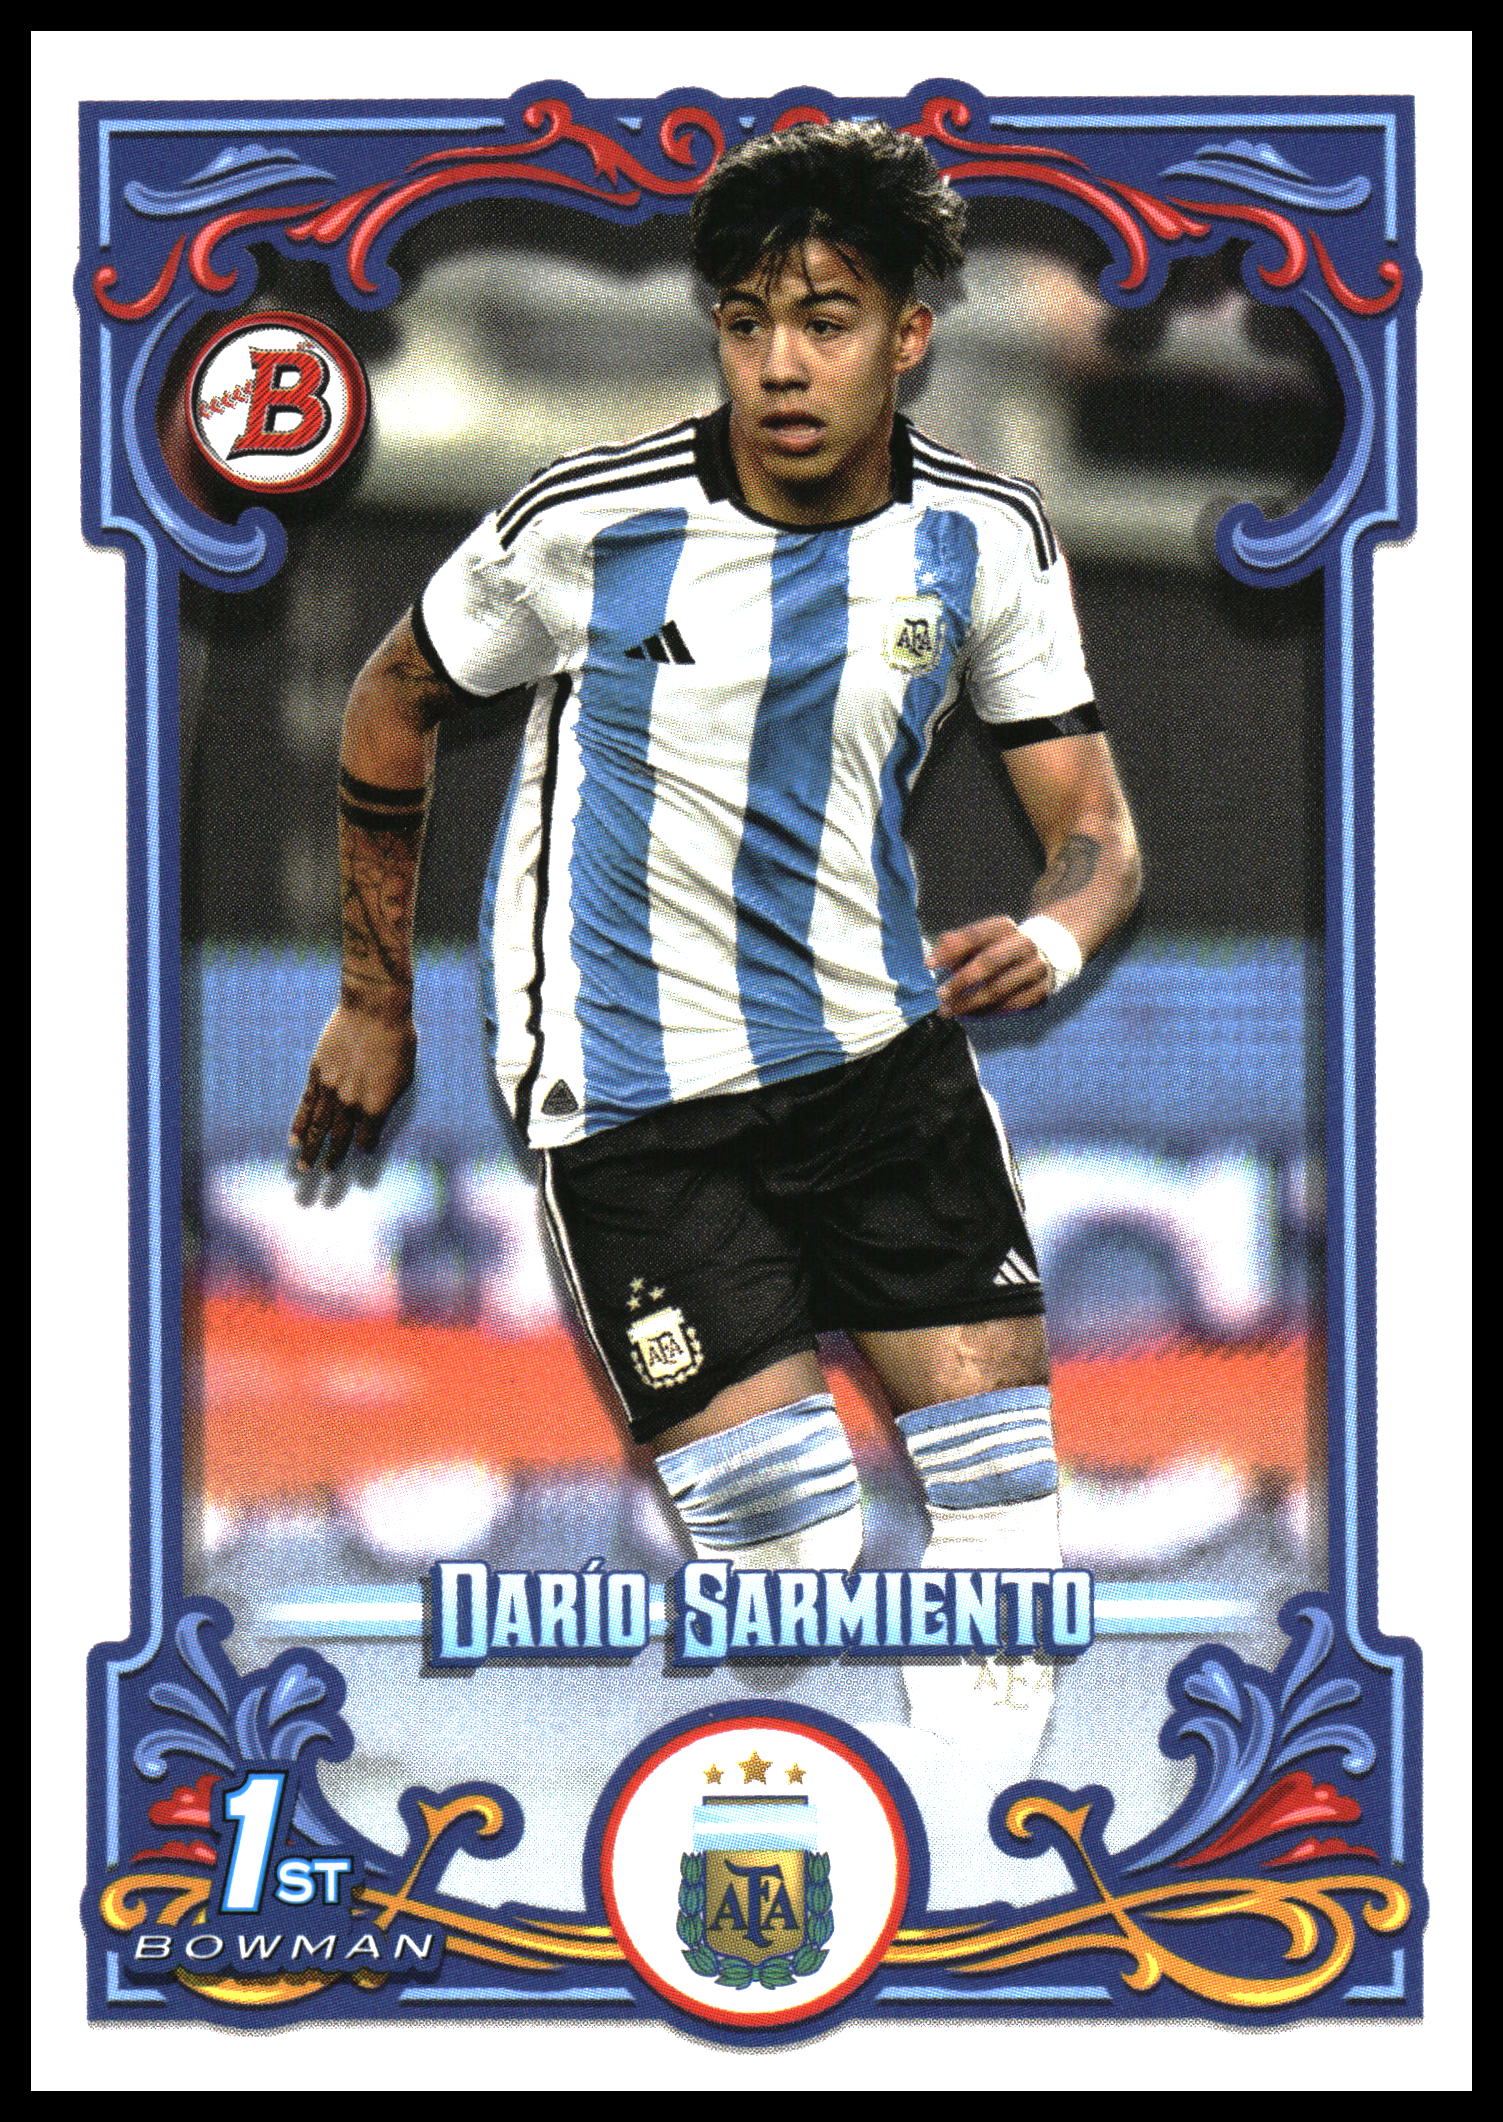 2023 topps Argentina fileteado Dario Sarmiento /25 1st bowman-